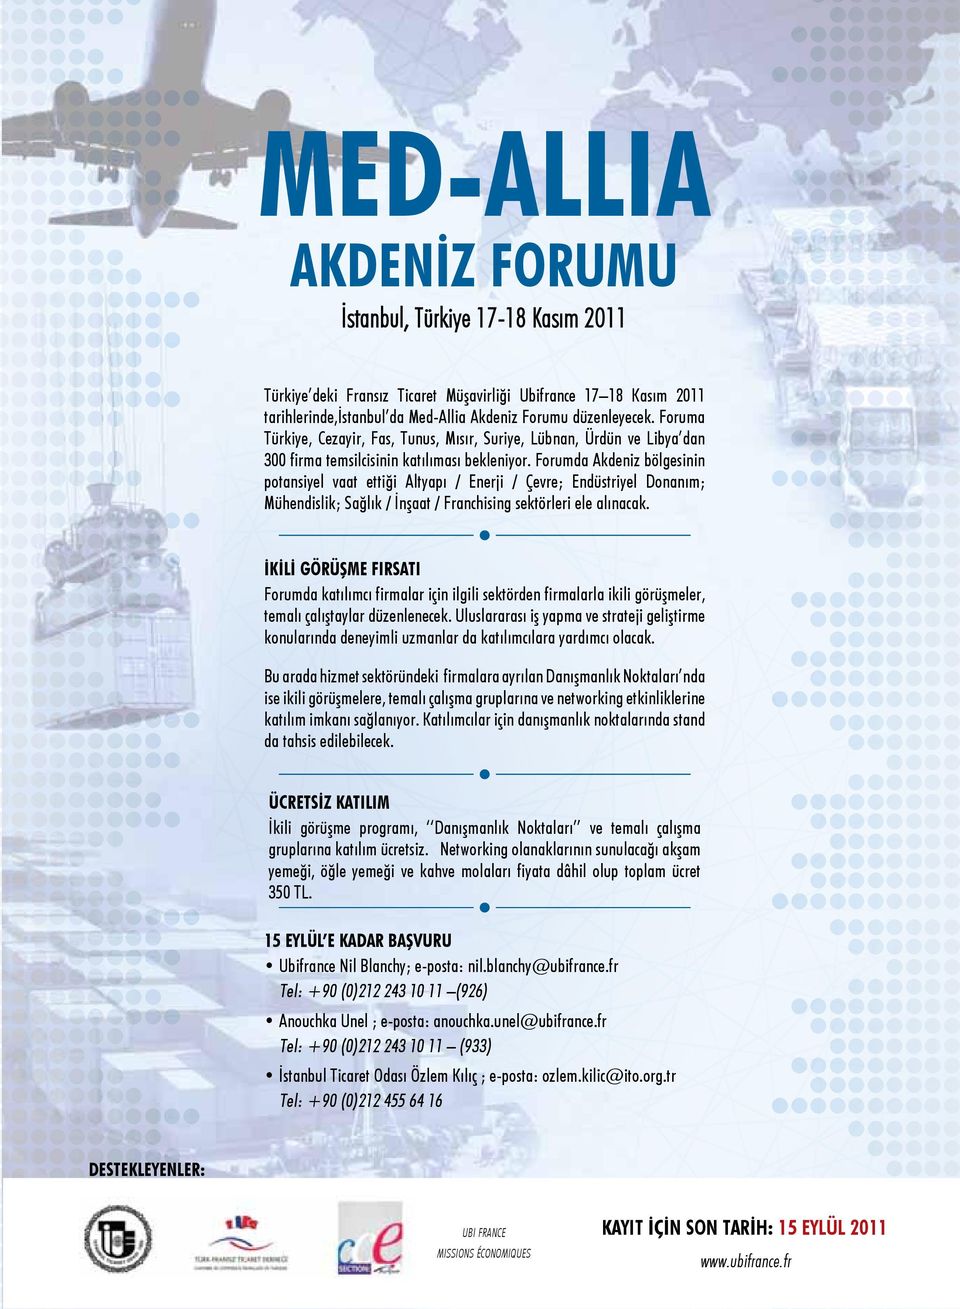 Forumda Akdeniz bölgesinin potansiyel vaat ettiği Altyapı / Enerji / Çevre; Endüstriyel Donanım; Mühendislik; Sağlık / İnşaat / Franchising sektörleri ele alınacak.